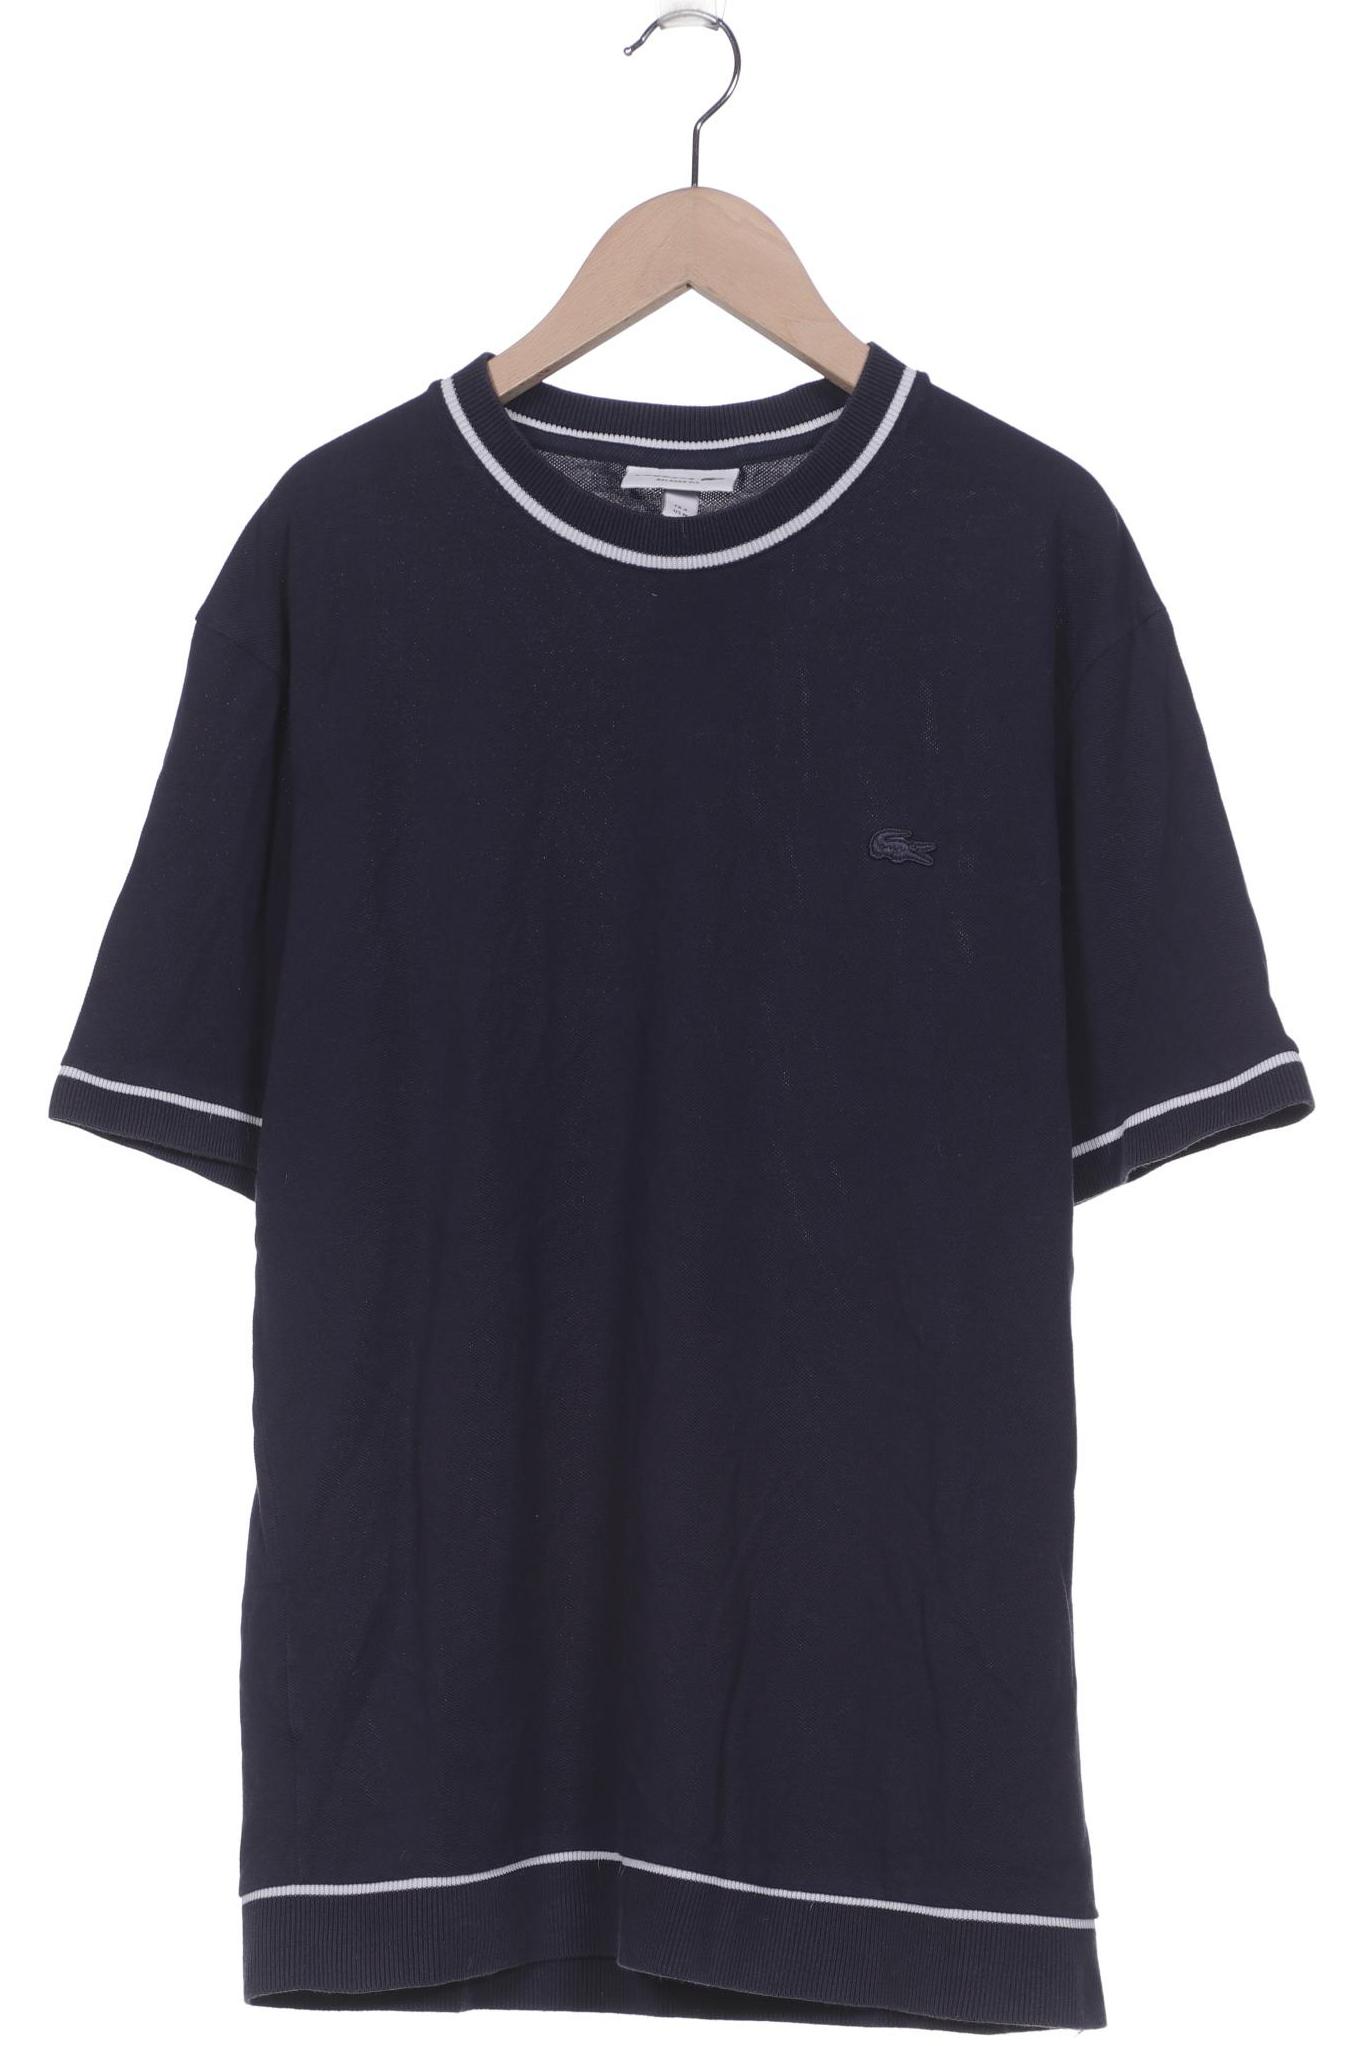 Lacoste Herren T-Shirt, marineblau, Gr. 48 von Lacoste